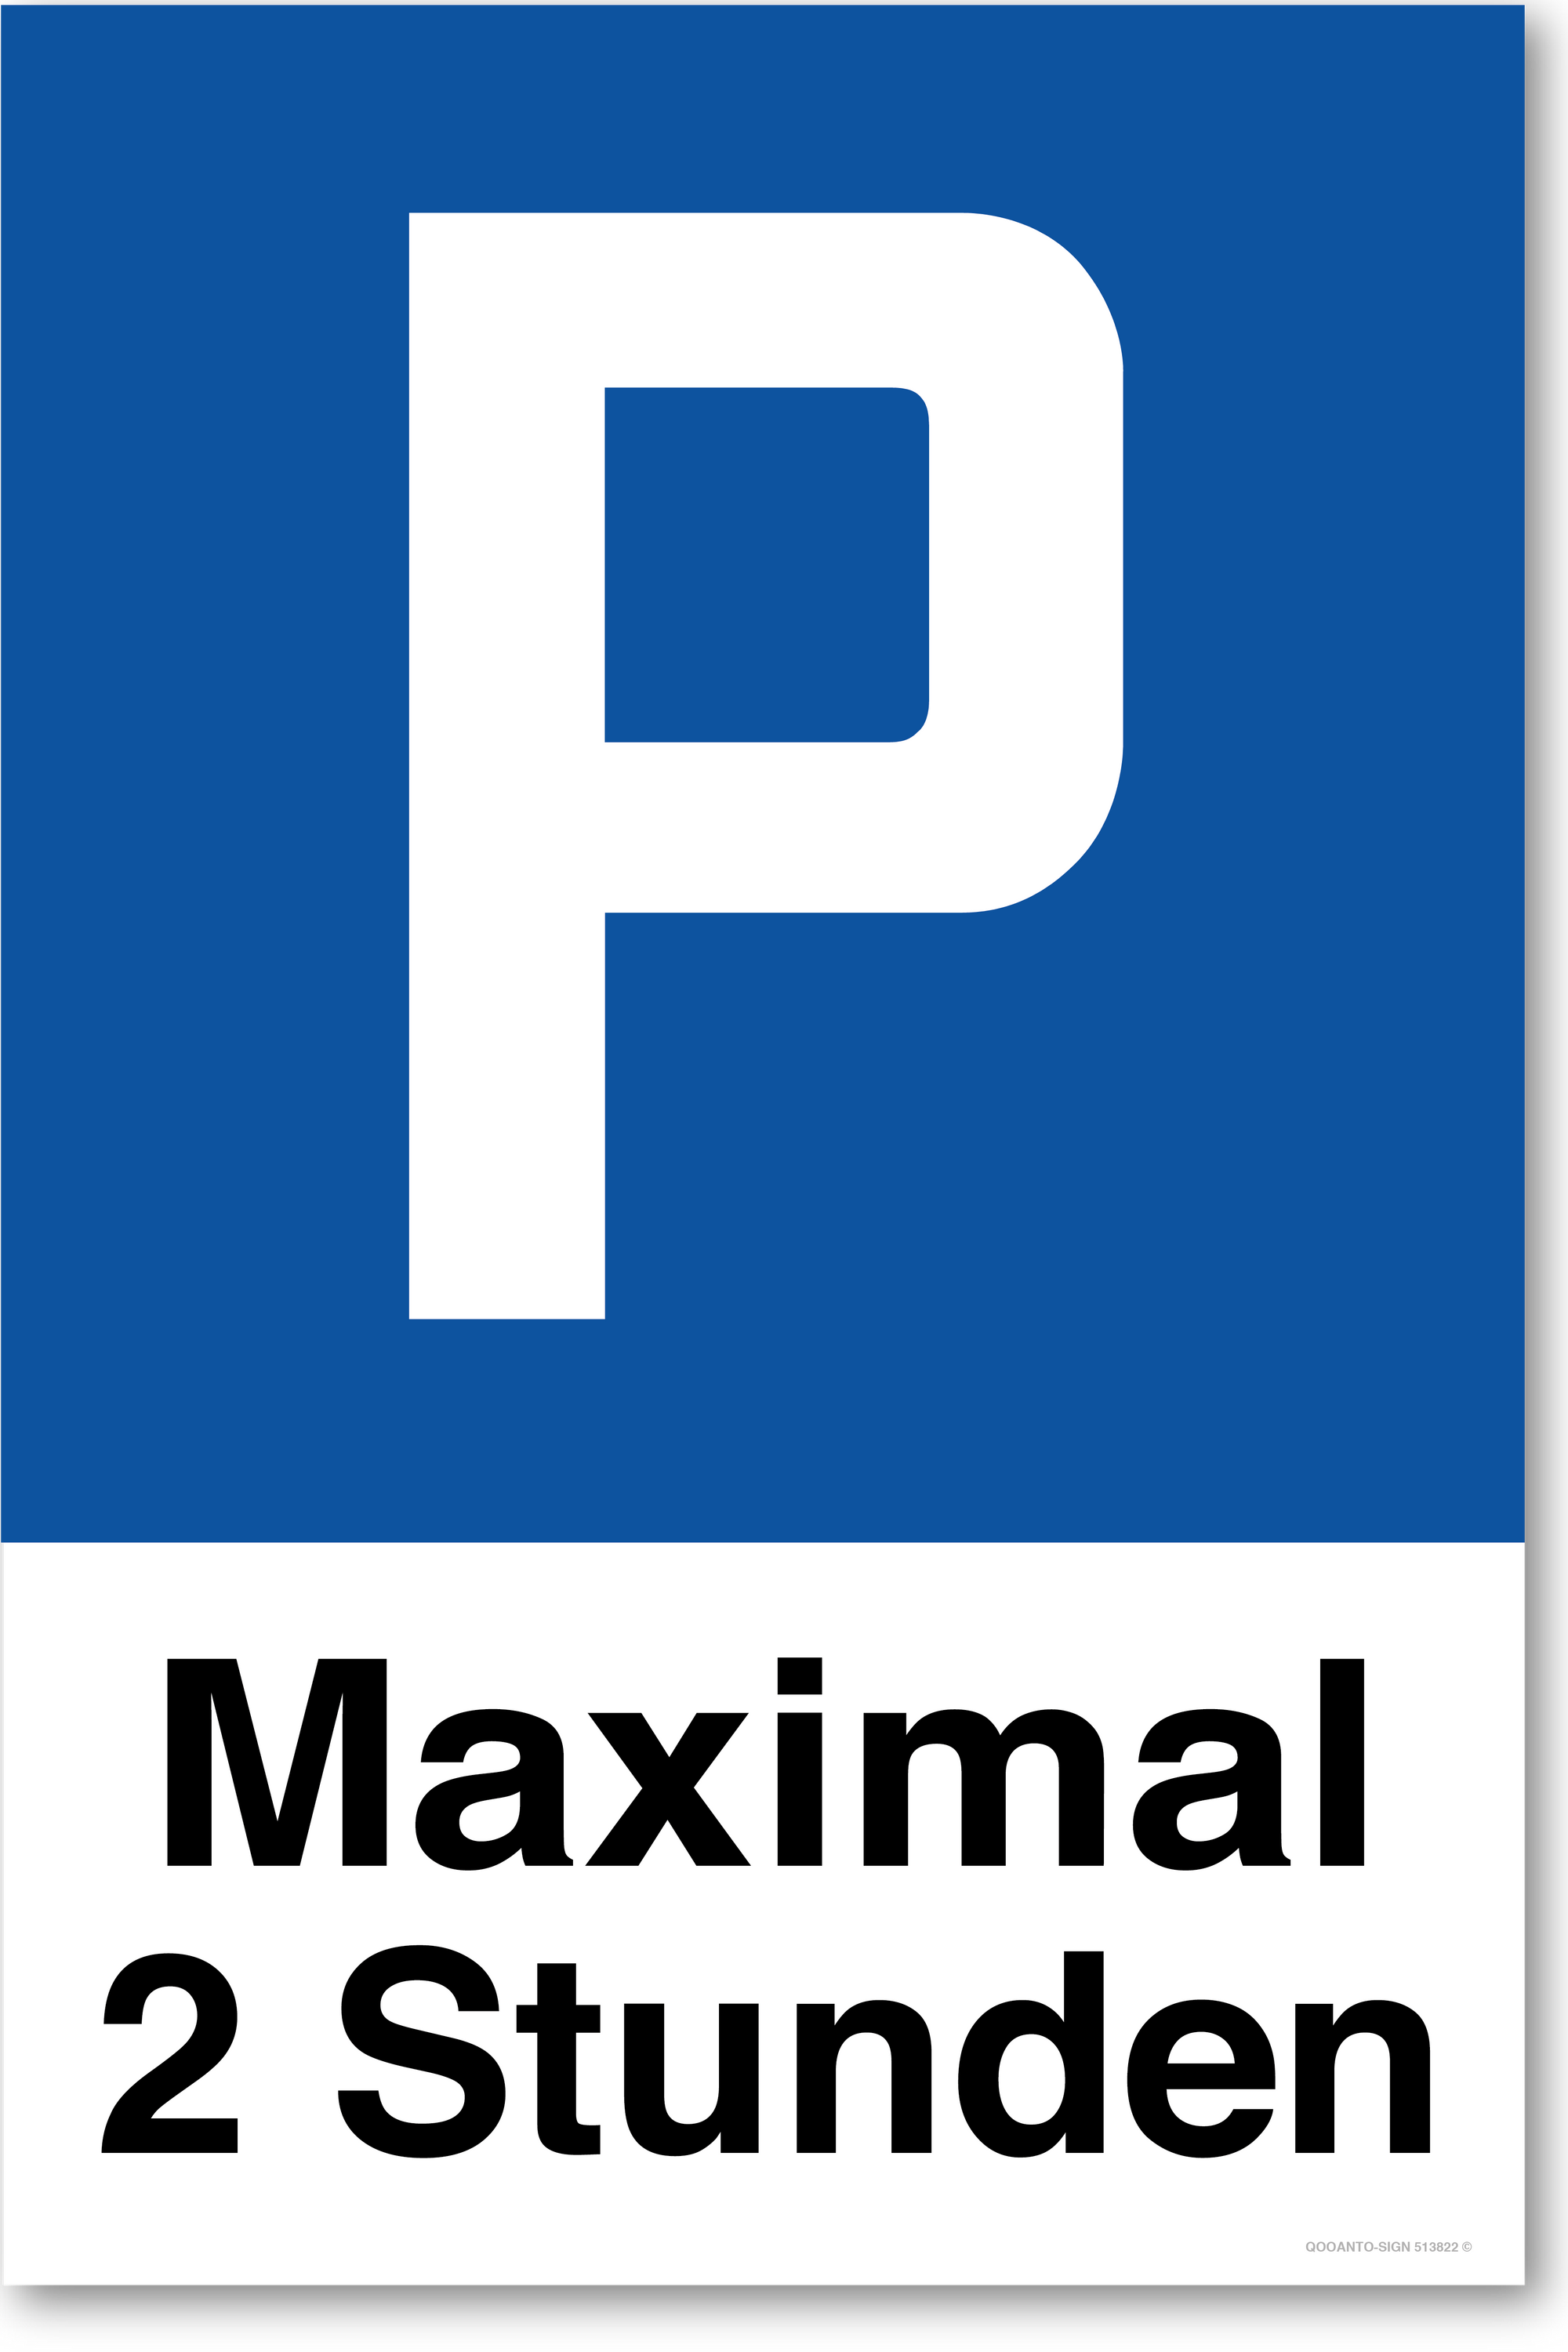 Maximal 2 Stunden - Parkplatzschild hochformat